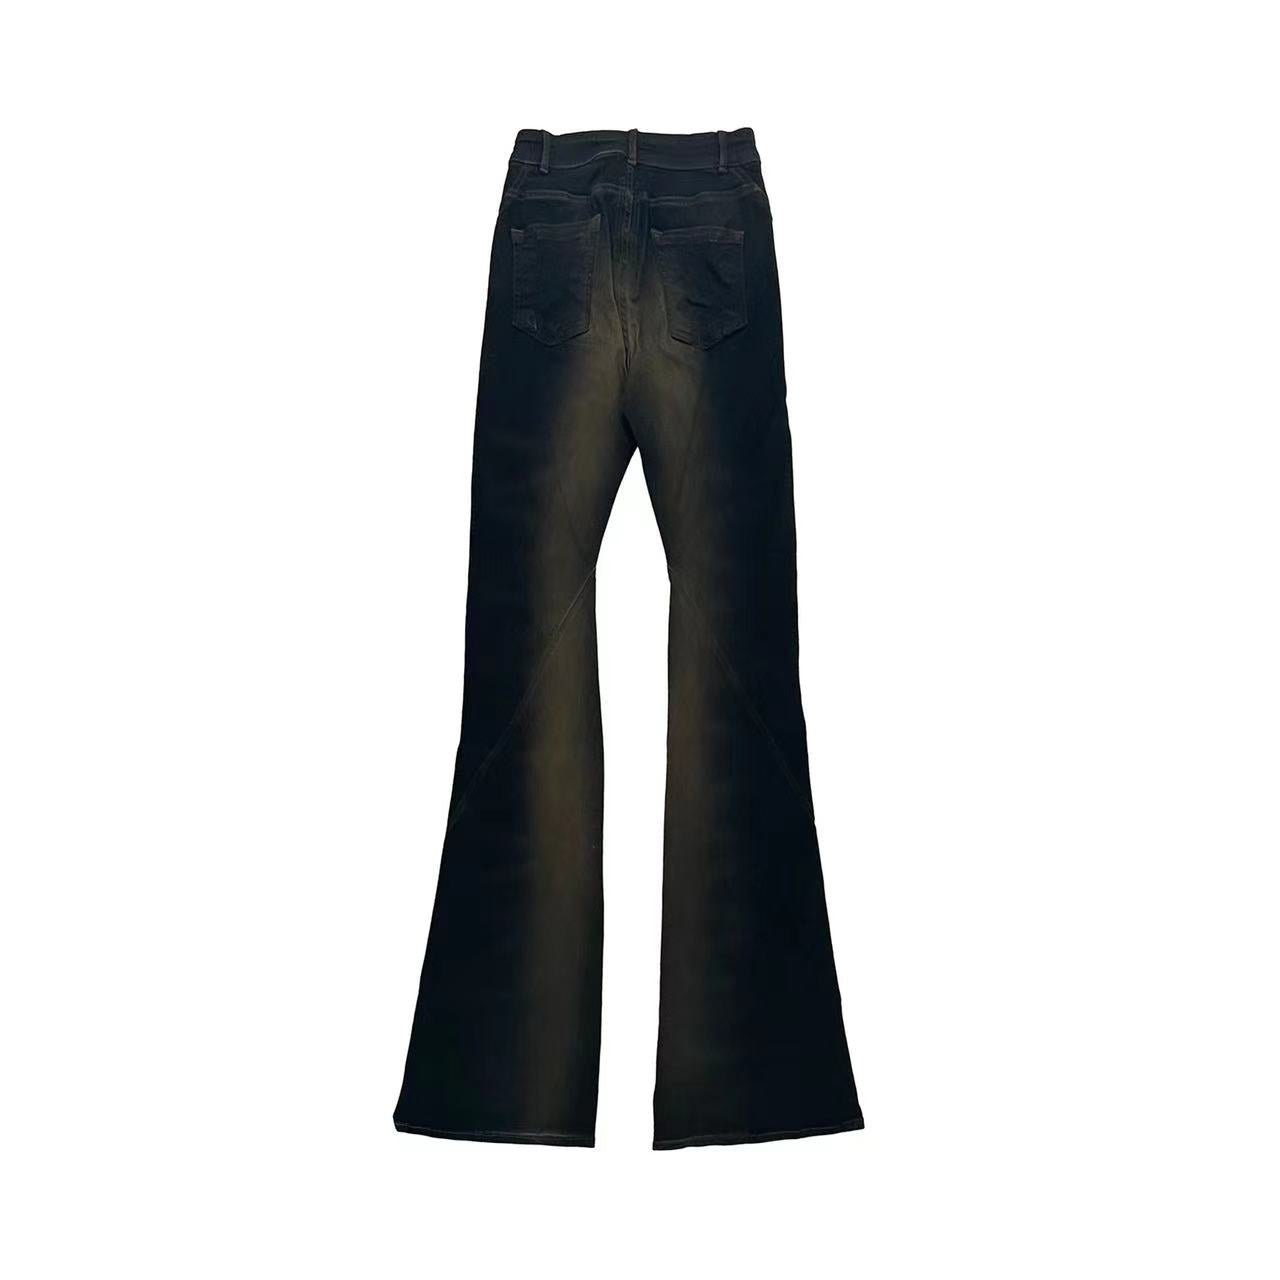 RICK OWENS DRKSHDW Women's Bias Bootcut Jeans - SHENGLI ROAD MARKET